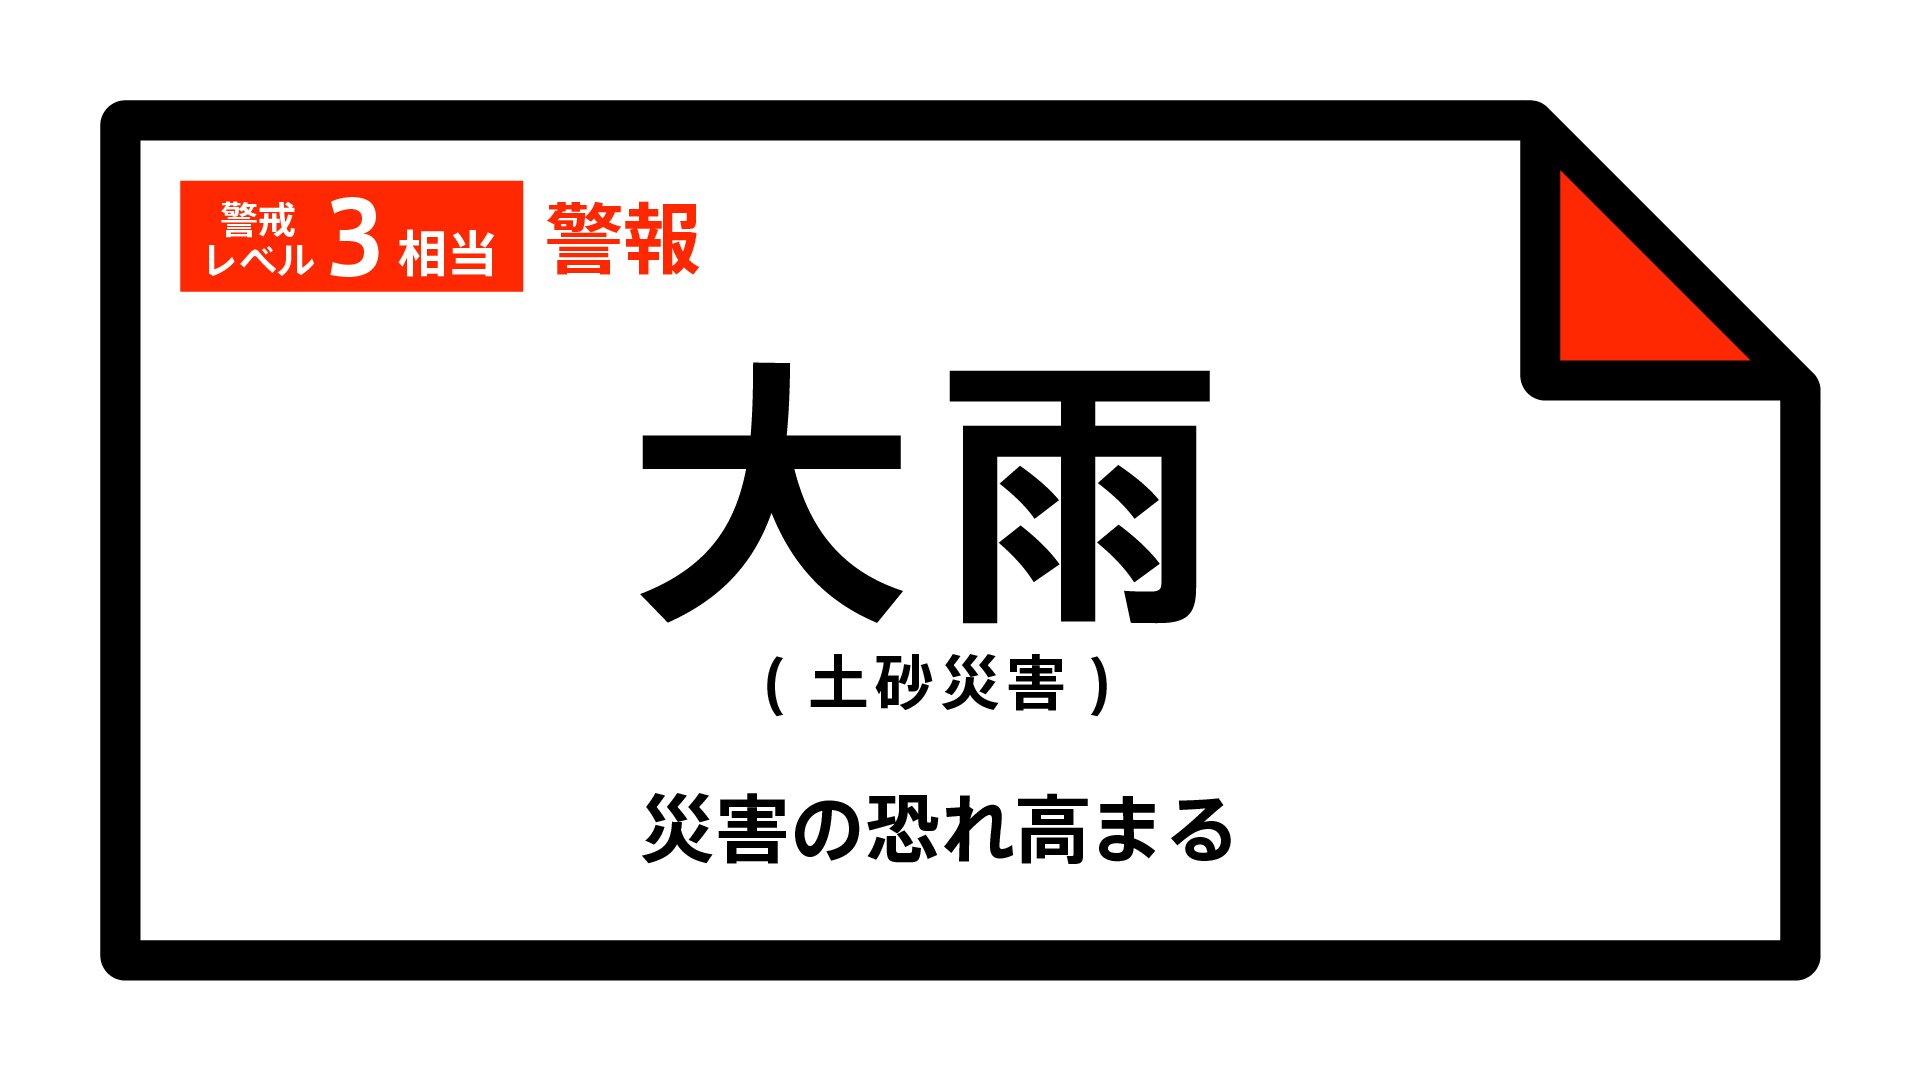 【大雨警報】石川県・輪島市、能登町に発表